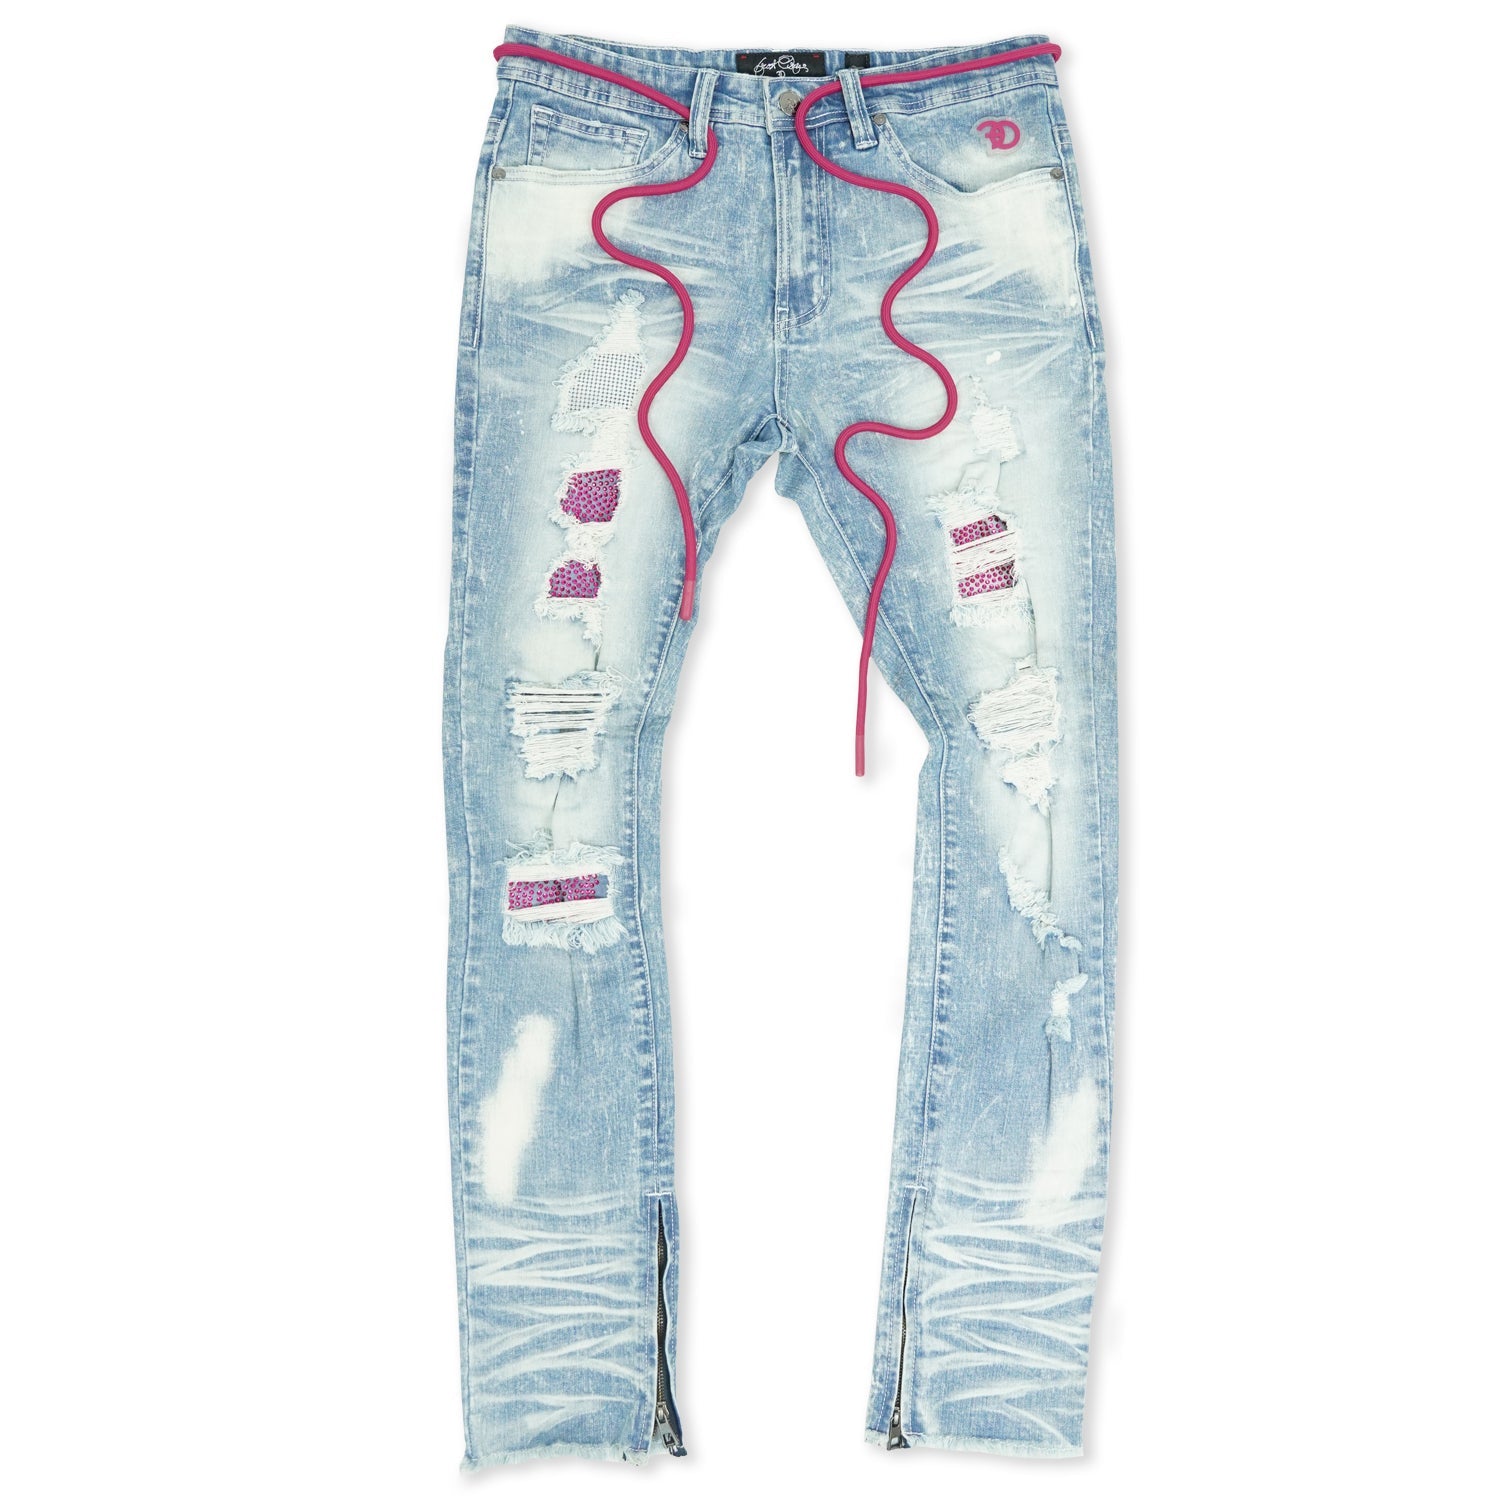 F1756 Denimu Jeans pẹlu Rhinestones & Idasonu Ẹsẹ Isalẹ - Fifọ ina/Pinki